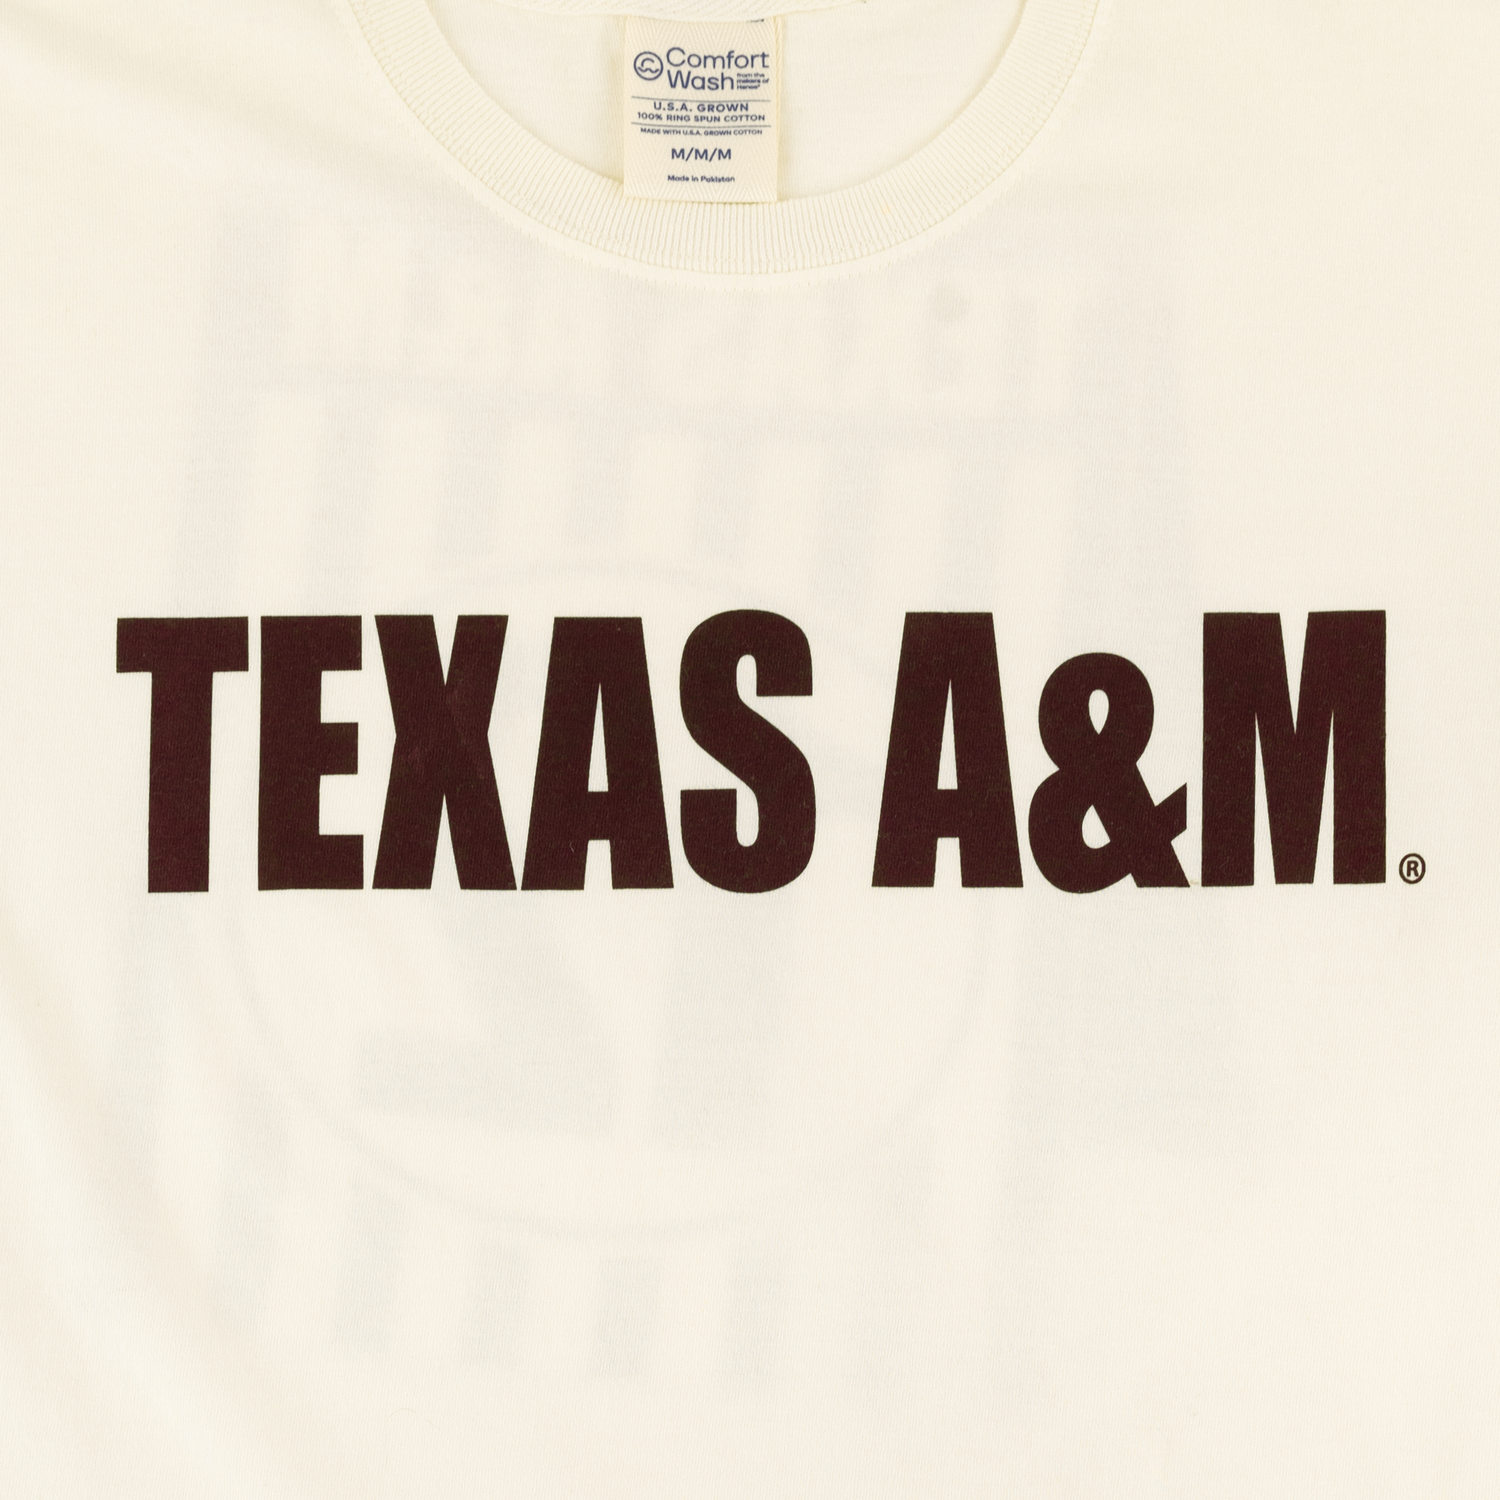 Texas A&M #12 T-Shirt